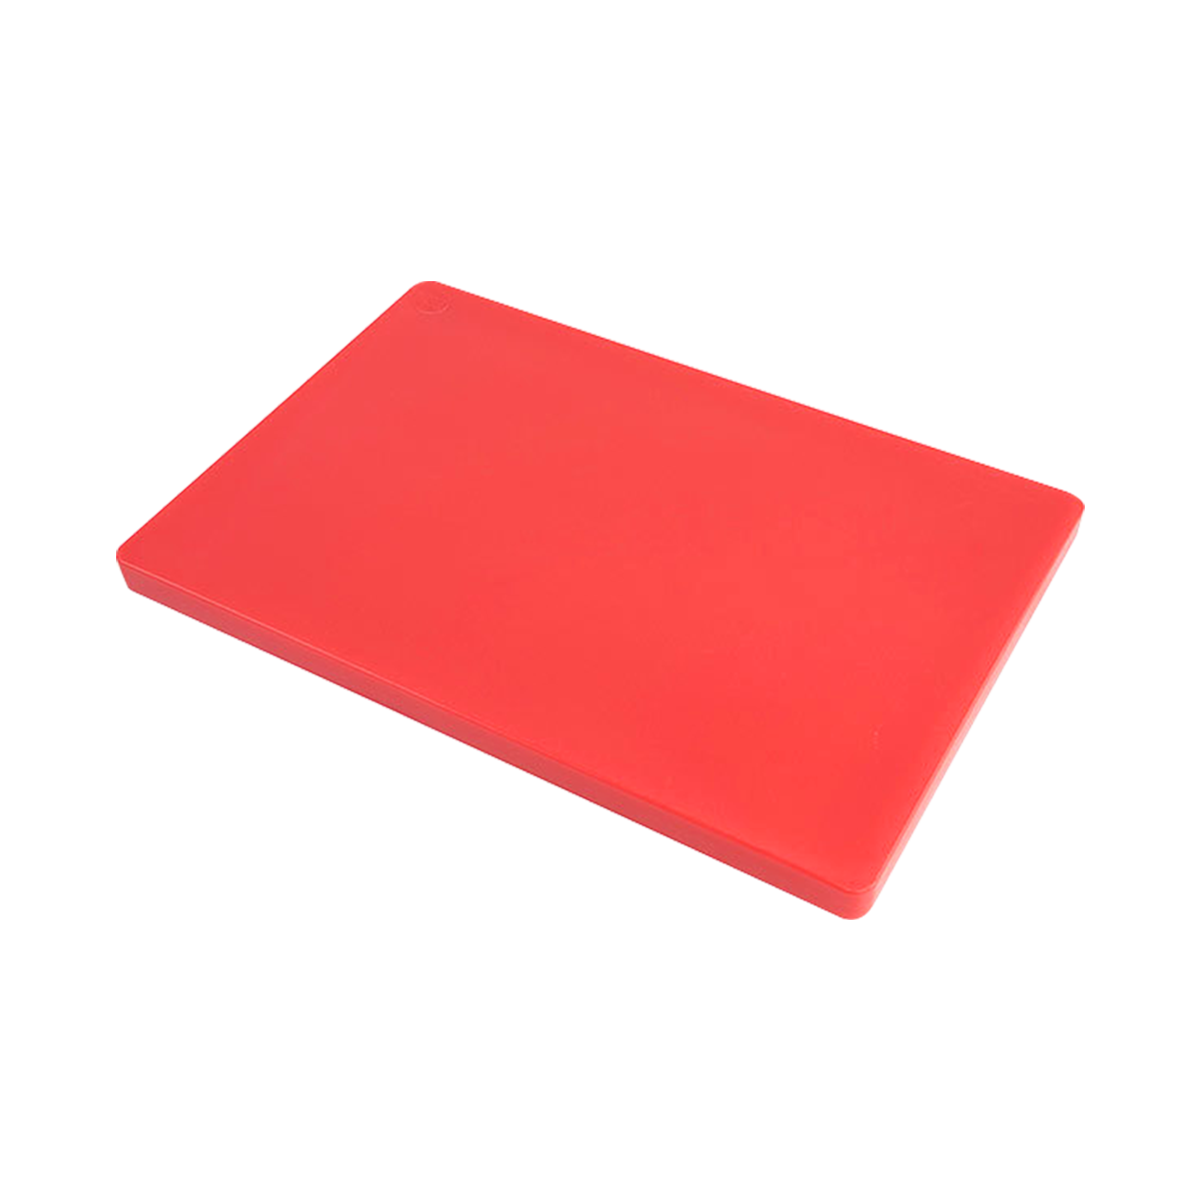 เขียงพลาสติก ทรงสี่เหลี่ยม ขนาด 30 x 50 x 3 ซม. สีแดง